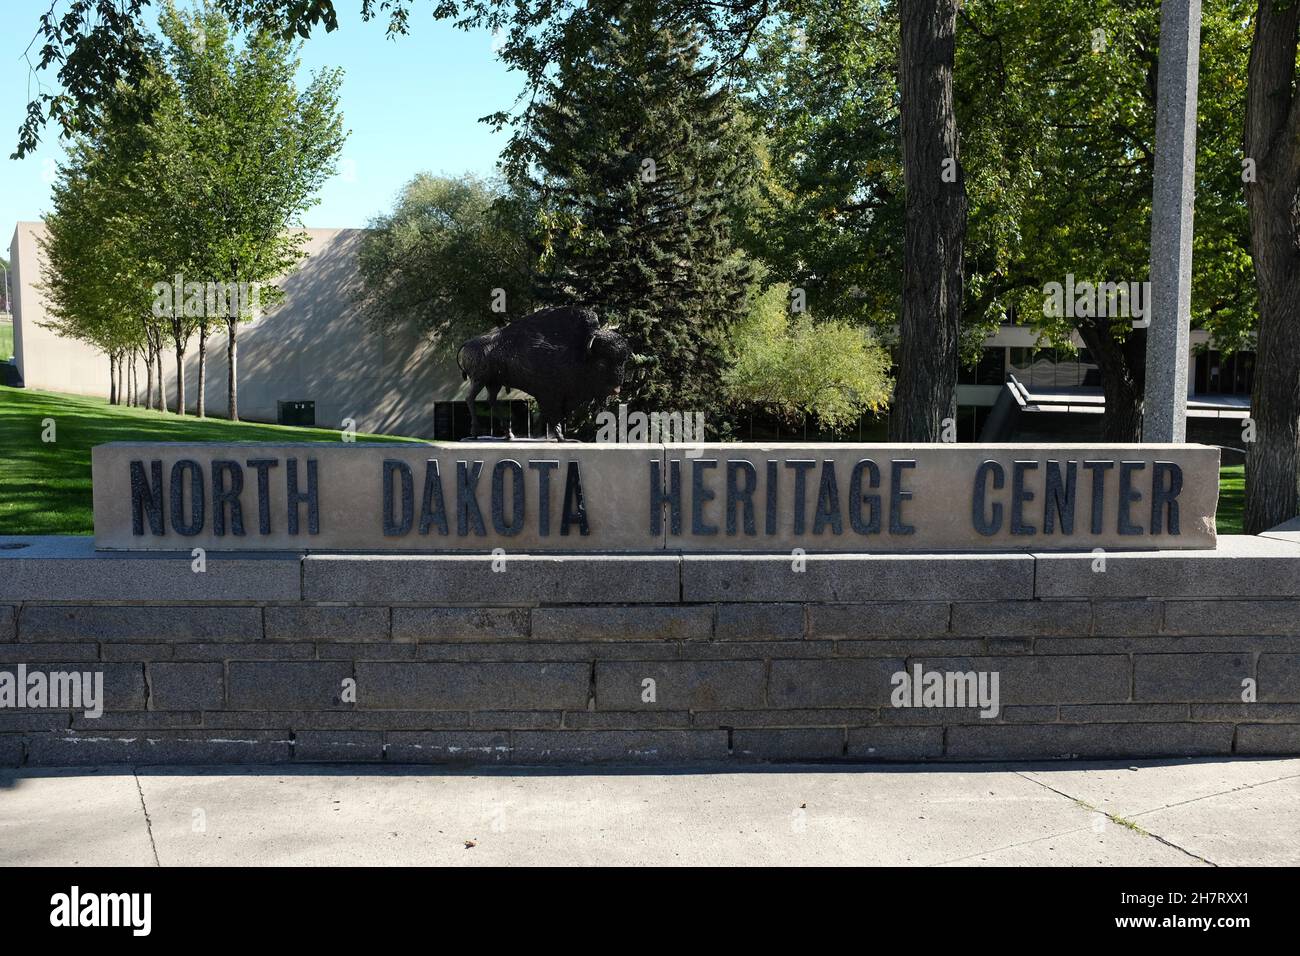 BISMARCK, NORTH DAKOTA - 2 Okt 2021: North Dakota Heritage Center Schild. Stockfoto